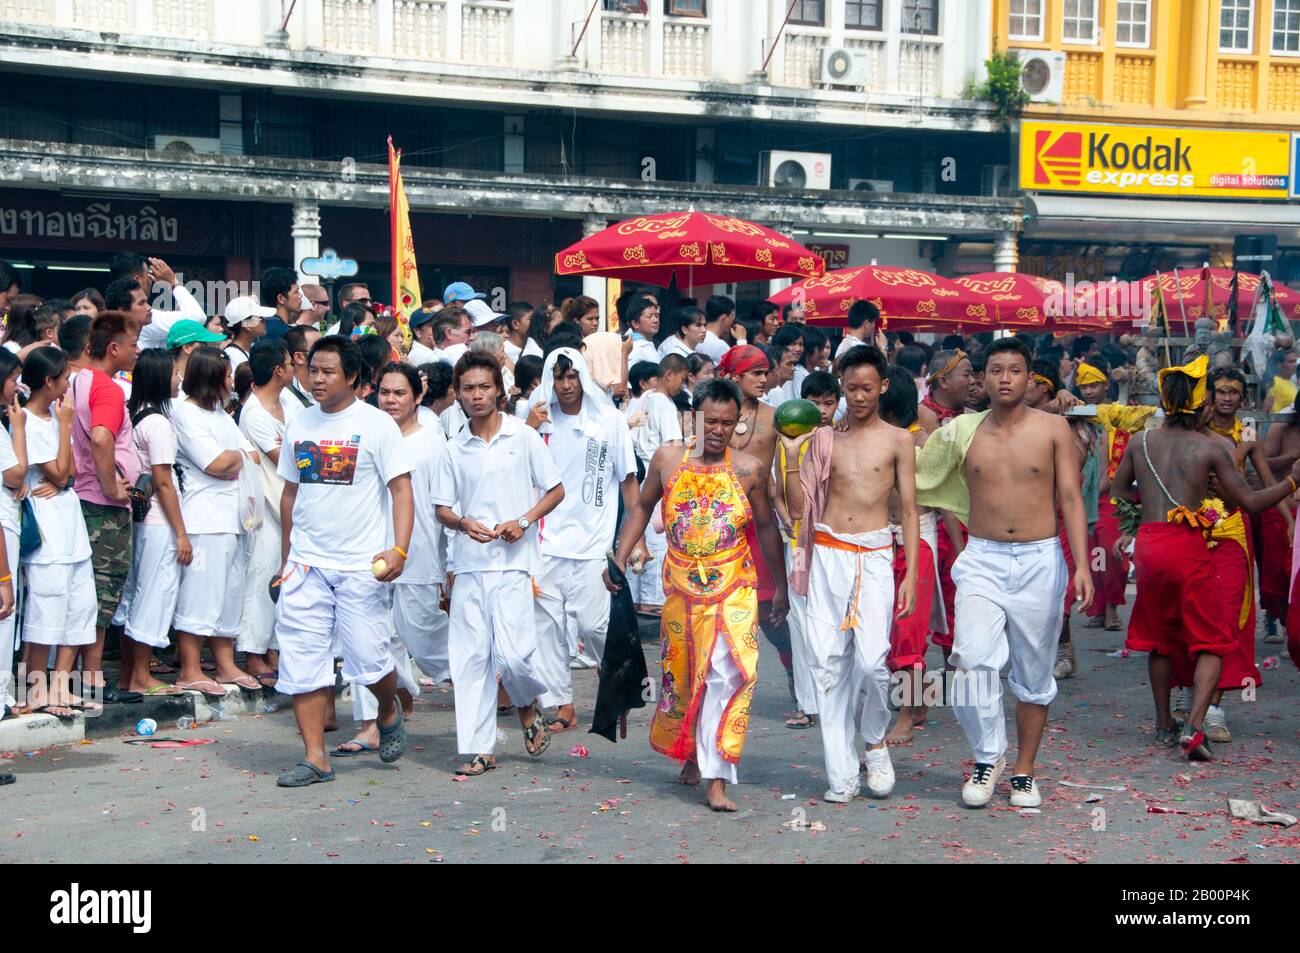 Thailand: Die "Ma Song" (mitgerissen Anhänger) und ihre Begleiter passieren die Straßen von Phuket Town, Phuket Vegetarian Festival. Das Vegetarische Festival ist ein religiöses Festival, das jährlich auf der Insel Phuket im Süden Thailands stattfindet. Es zieht Massen von Zuschauern wegen vieler der ungewöhnlichen religiösen Rituale an, die durchgeführt werden. Viele religiöse Anhänger werden sich mit Schwertern niederschlagen, ihre Wangen mit scharfen Gegenständen durchbohren und andere schmerzhafte Handlungen begehen. Stockfoto